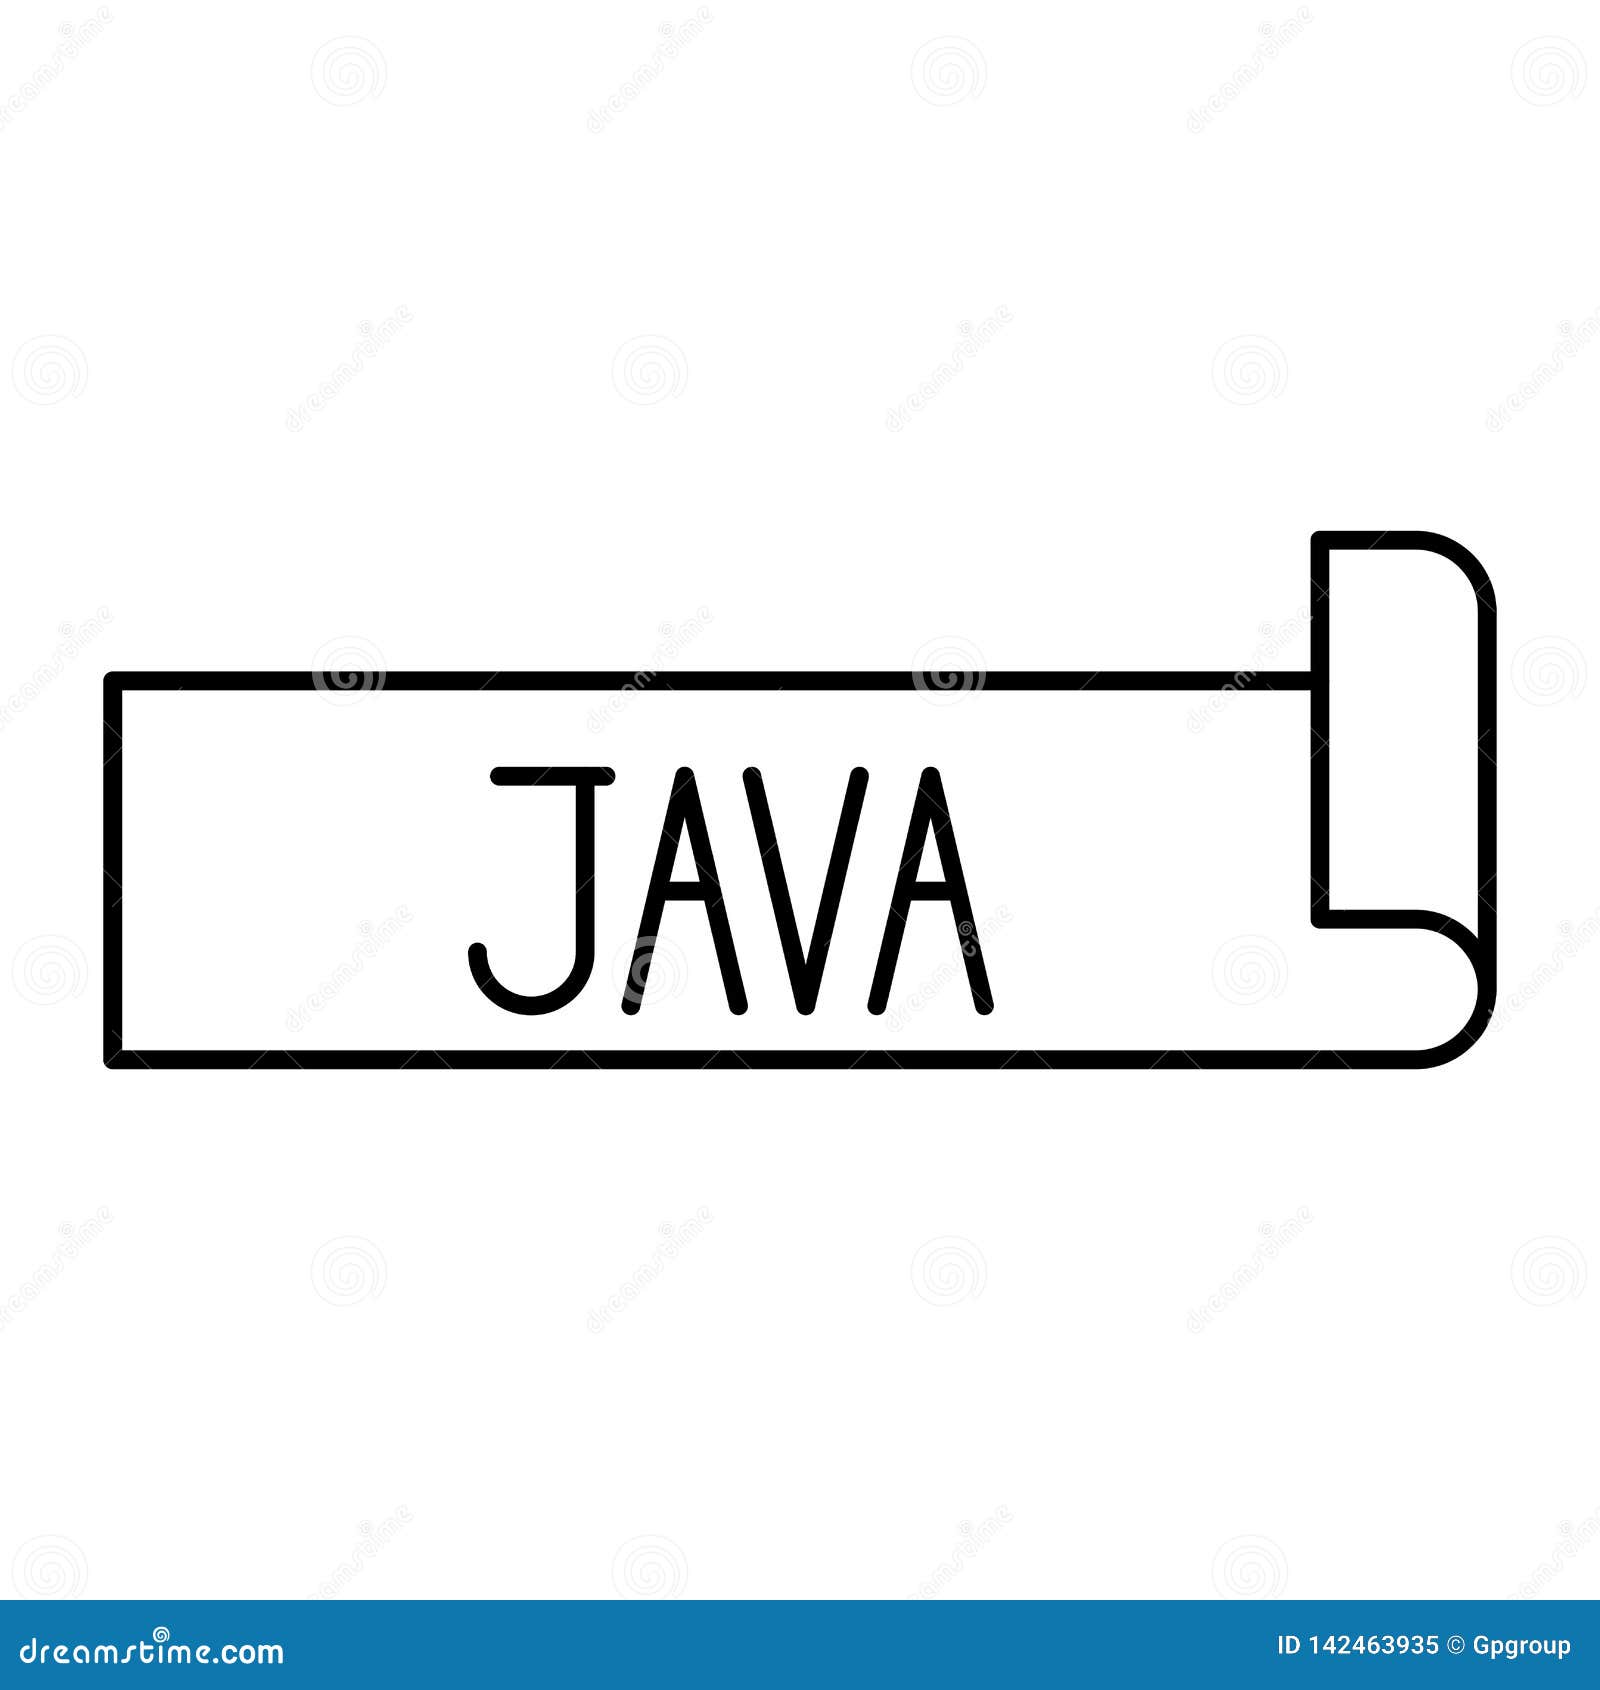 Java Methods | CodesDope